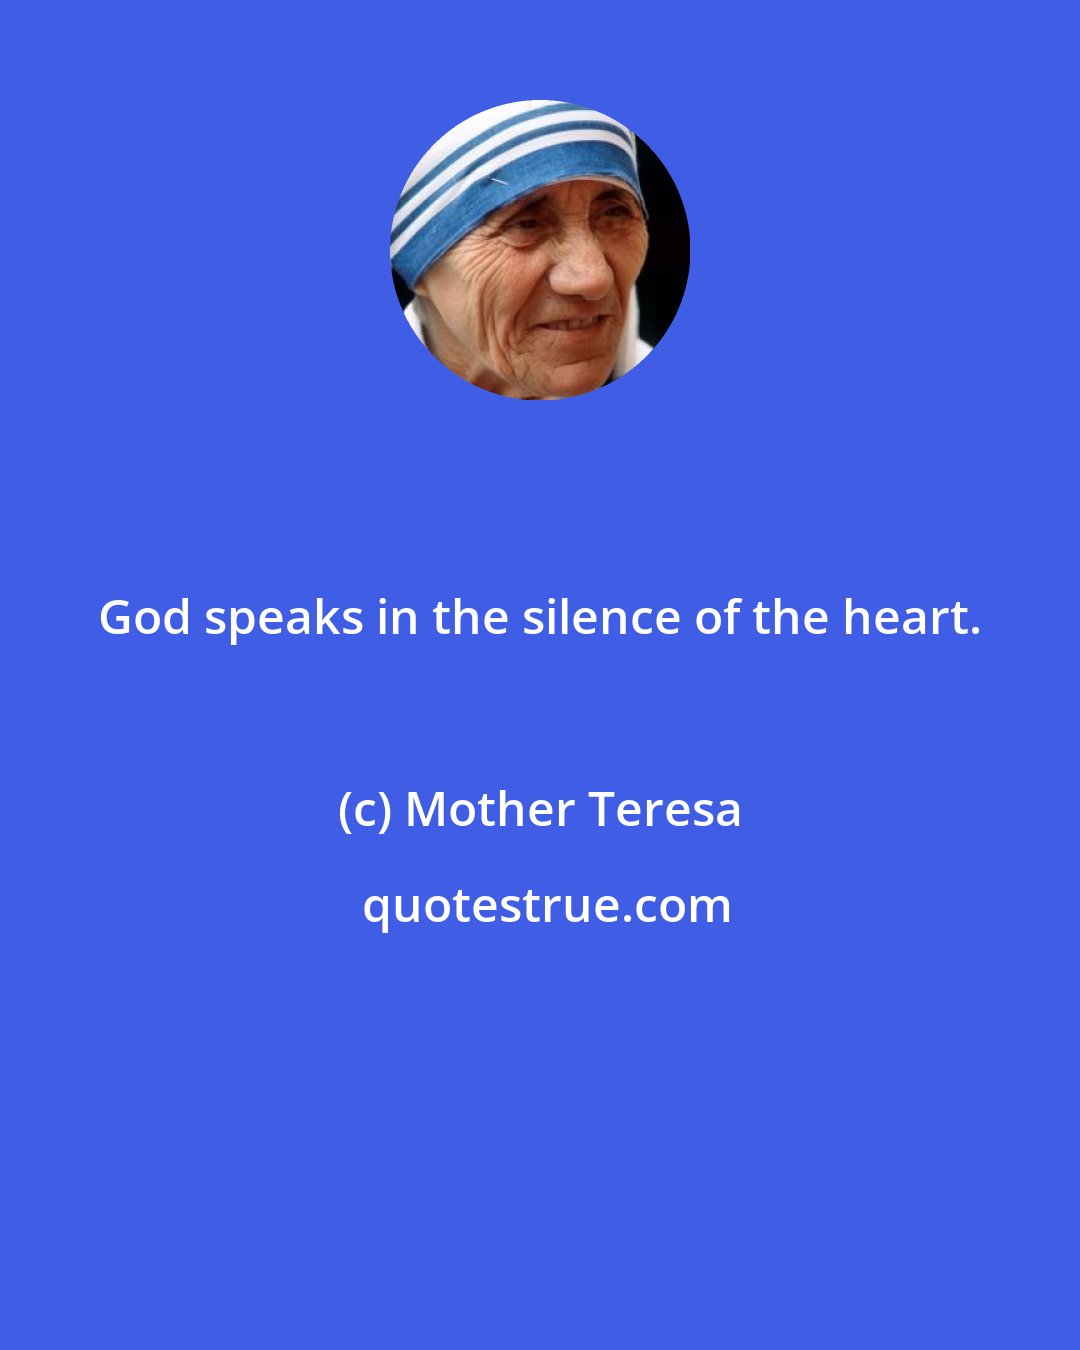 Mother Teresa: God speaks in the silence of the heart.